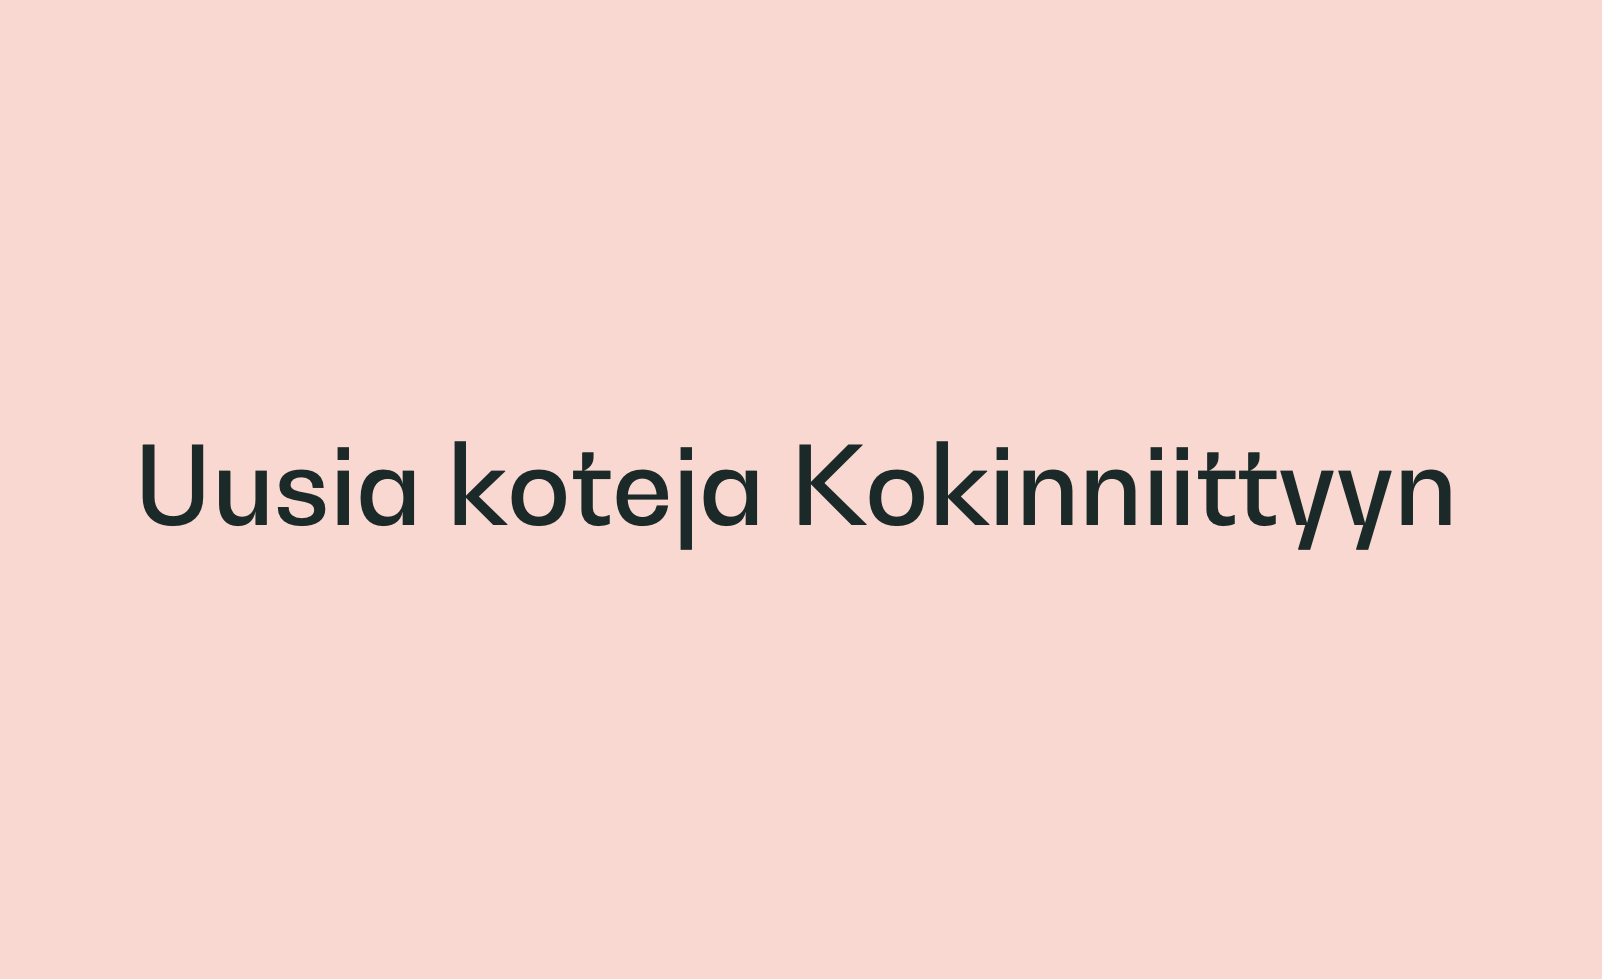 Asuntoyhtymä rakennuttaa uusia Joo Koteja Espoon Kokinniittyyn luomaan huoletonta vuokra-asumista.